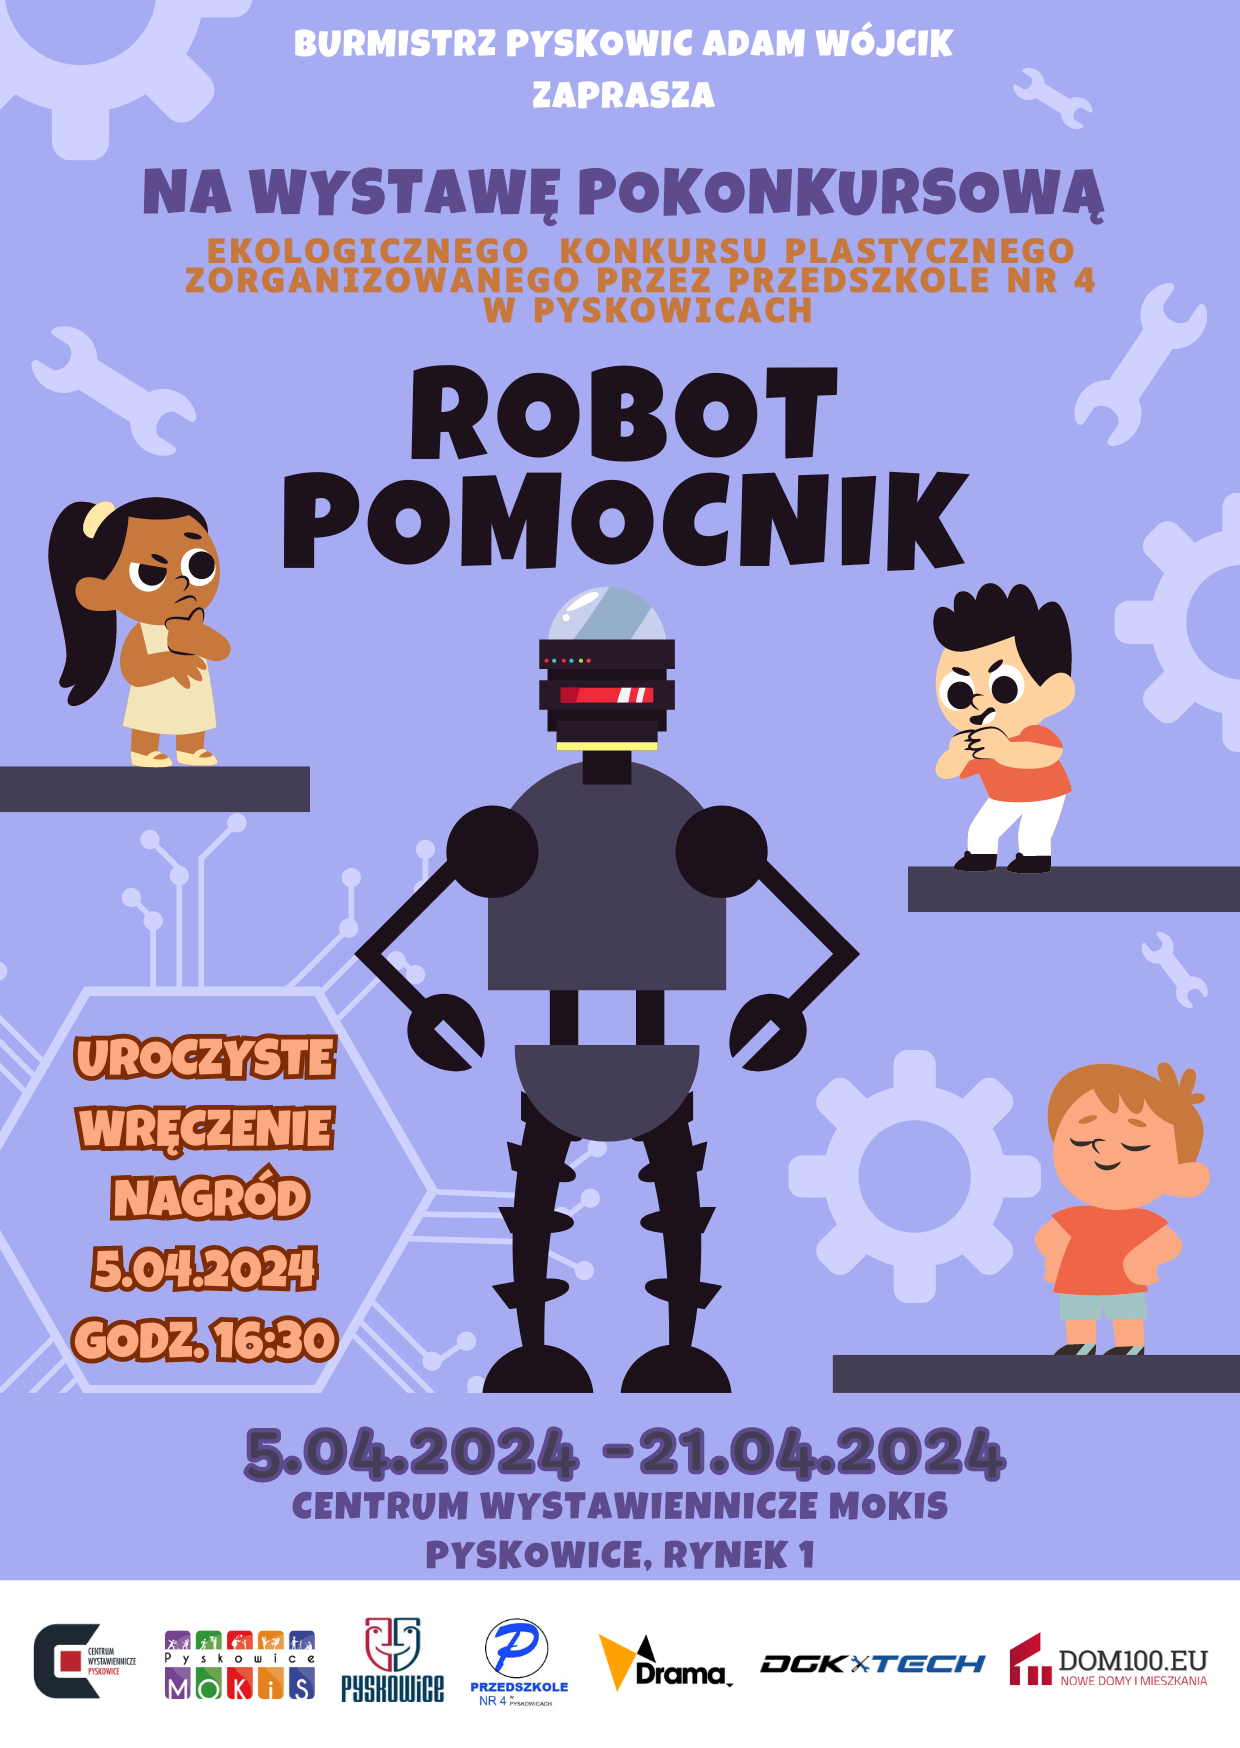 Plakat promujący Inwazję robotów w Ratuszu w Pyskowicach